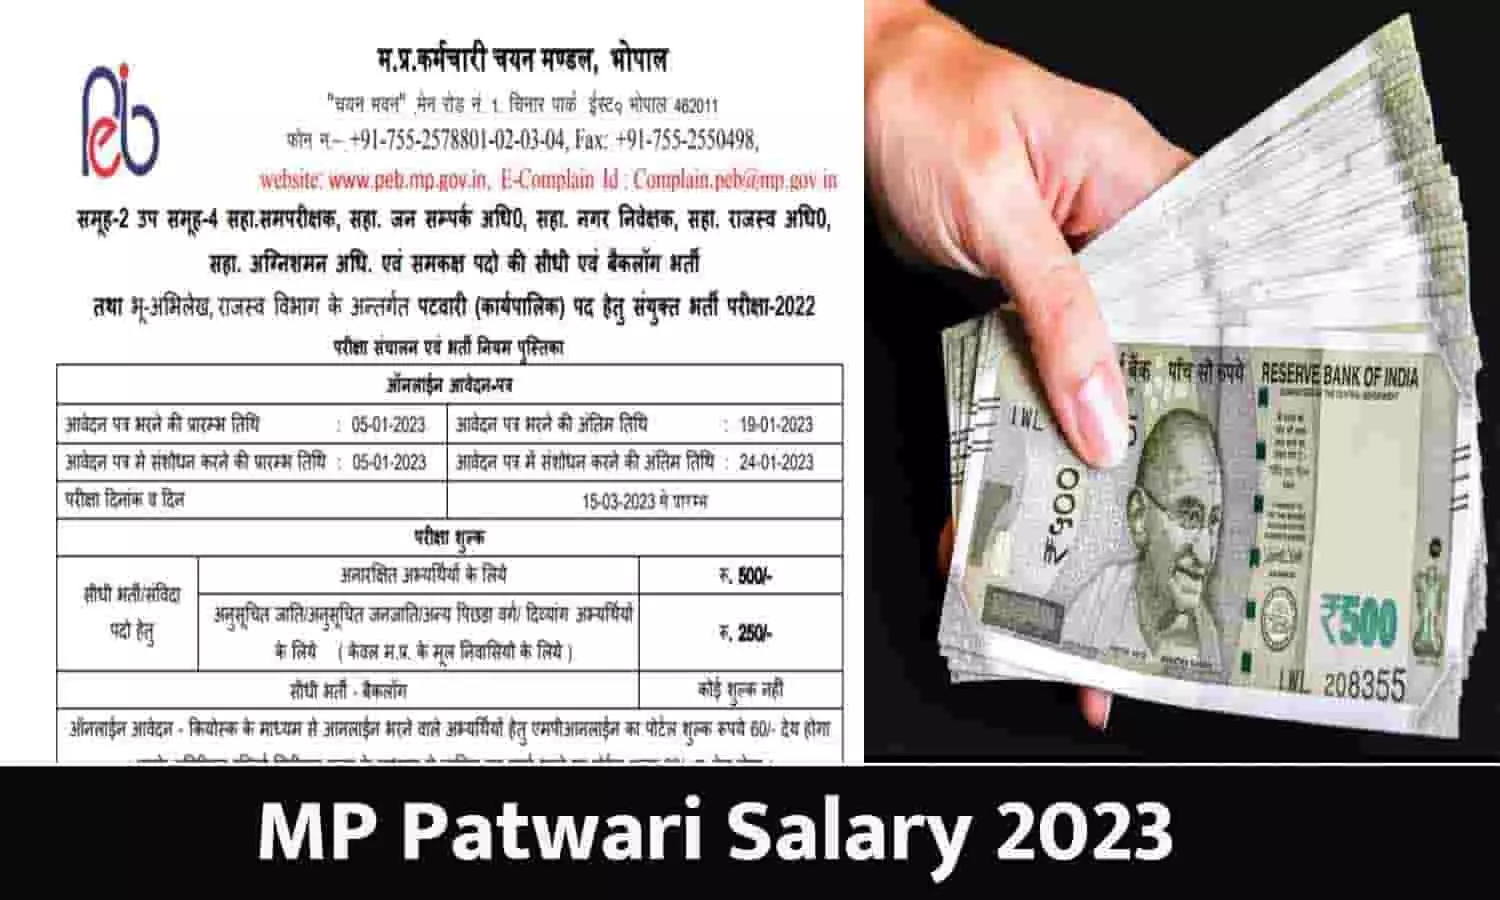 MP Patwari 2023 Me Salary Kitni Milegi: मध्यप्रदेश पटवारी भर्ती में वेतन कितना मिलेगा 2023